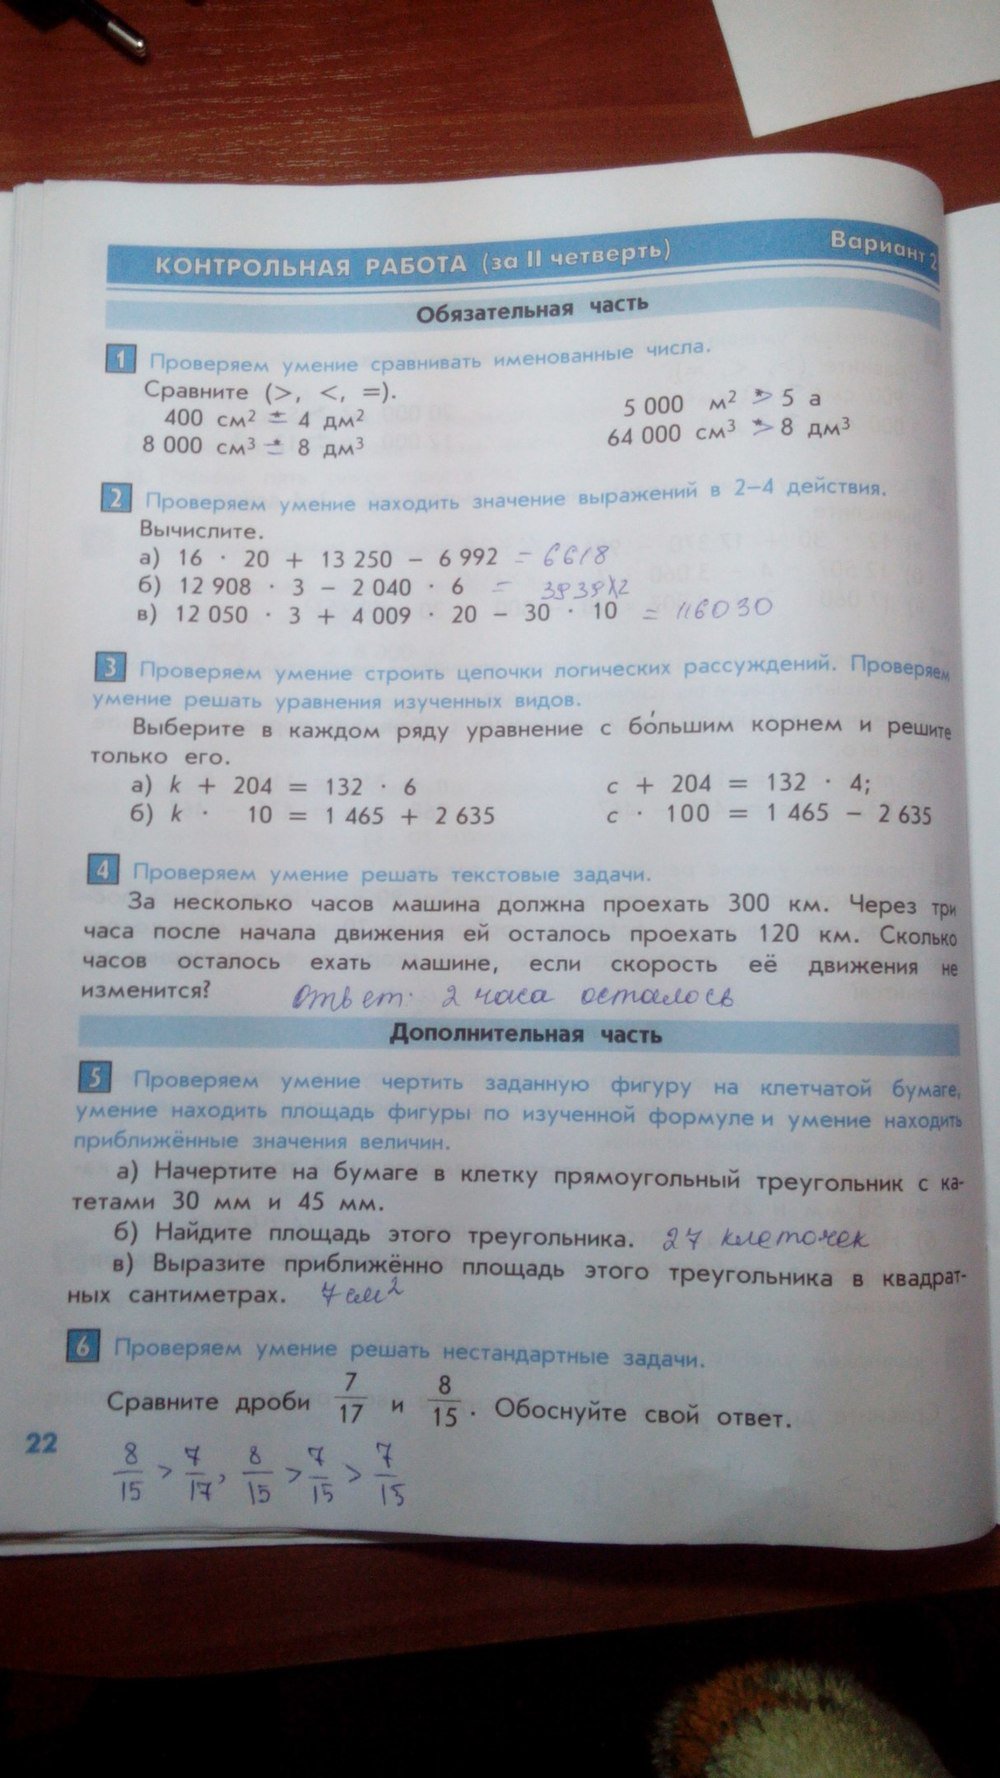 гдз 4 класс тесты и контрольные работы страница 22 математика Козлова, Рубин